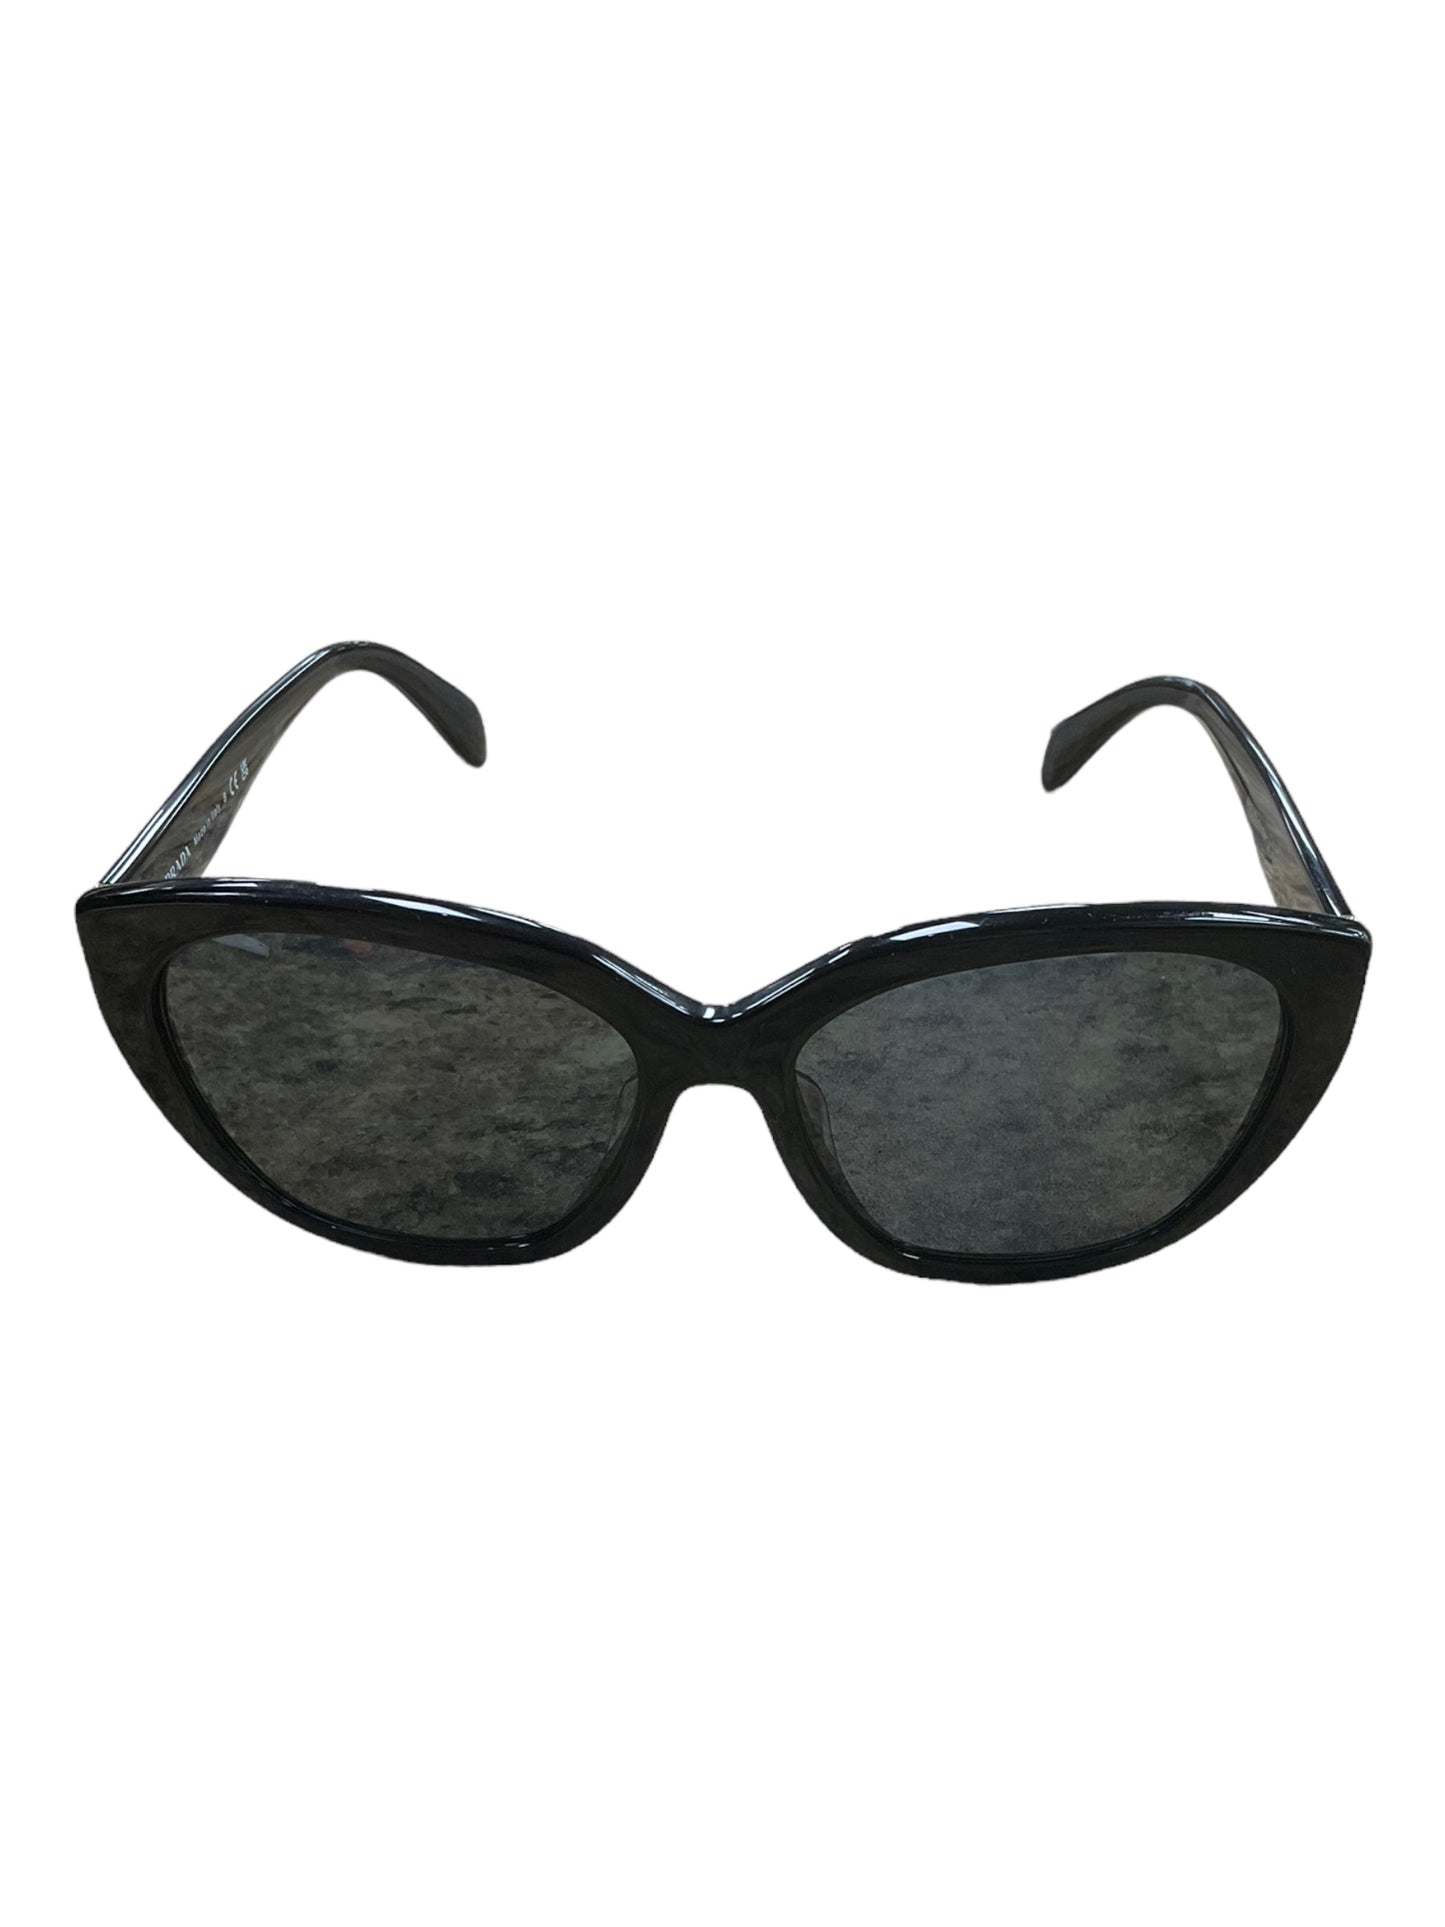 Sunglasses Designer By Prada  Size: 01 Piece